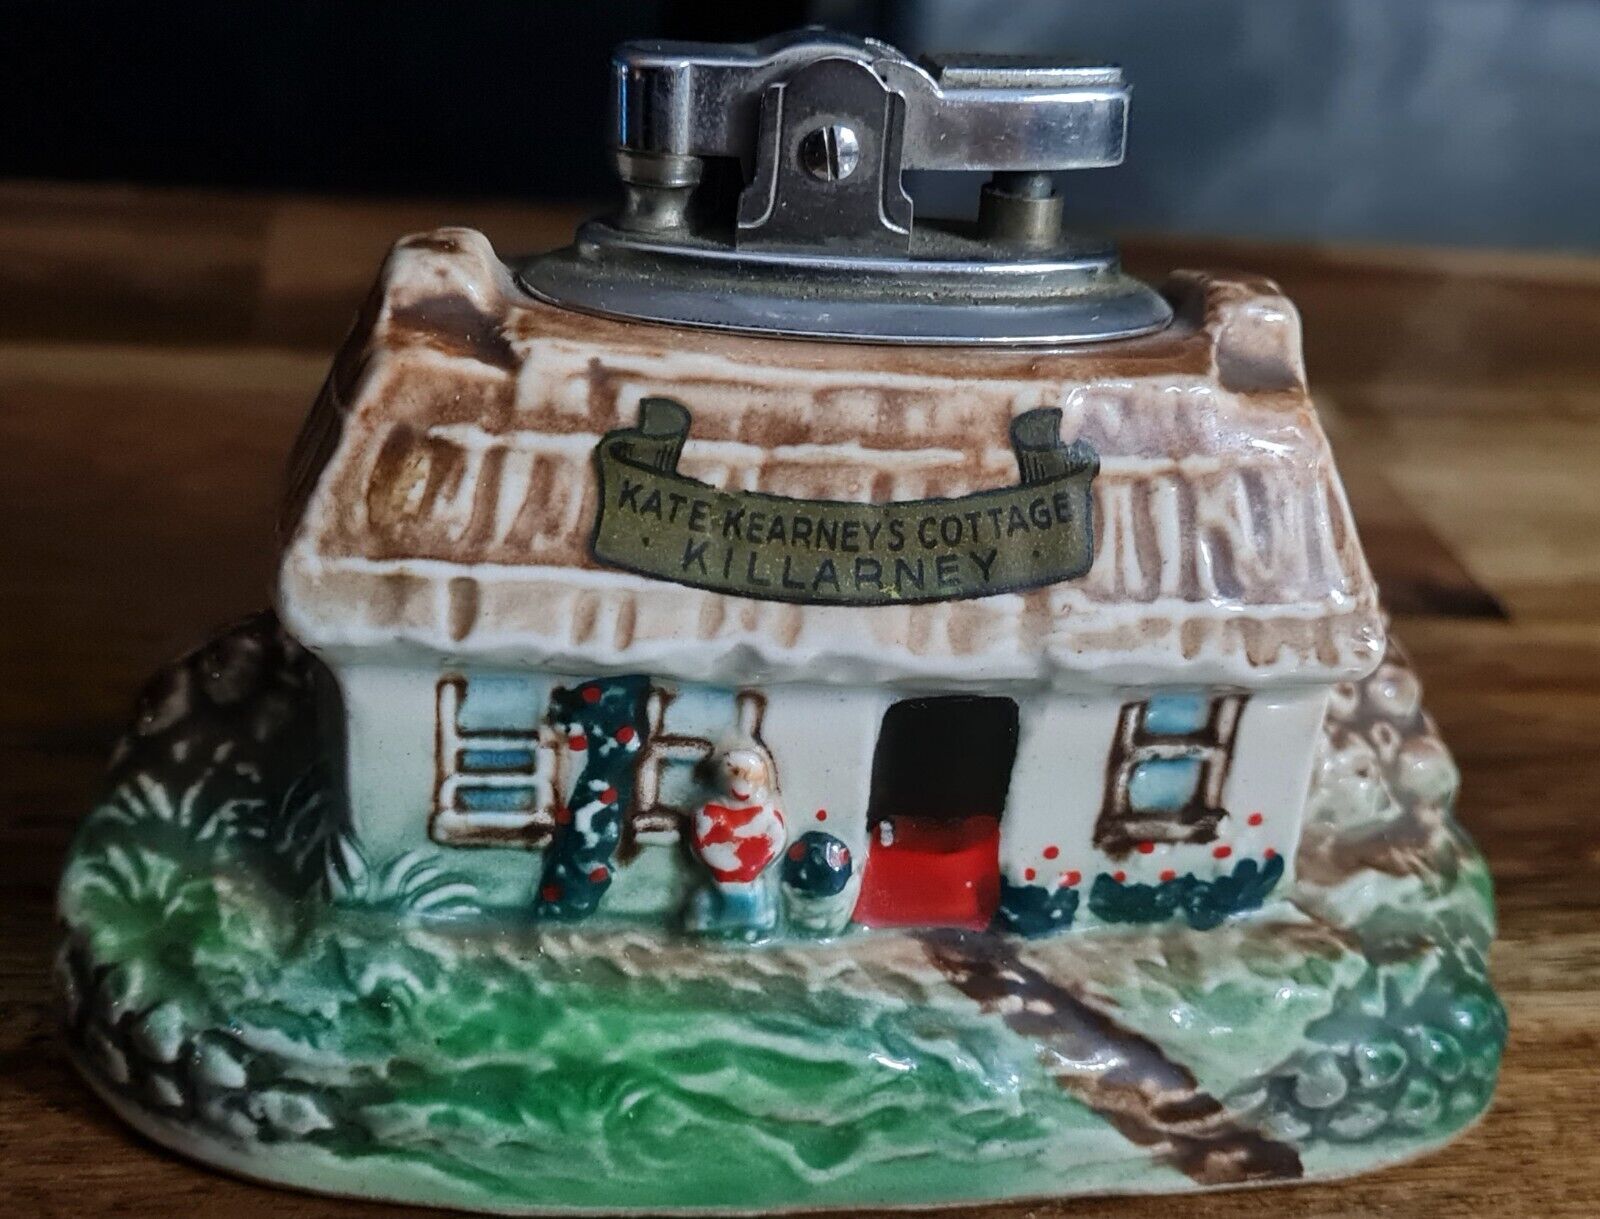 Rare Vintage Kate Kearneys Cottage Killarney Porcelain Lighter